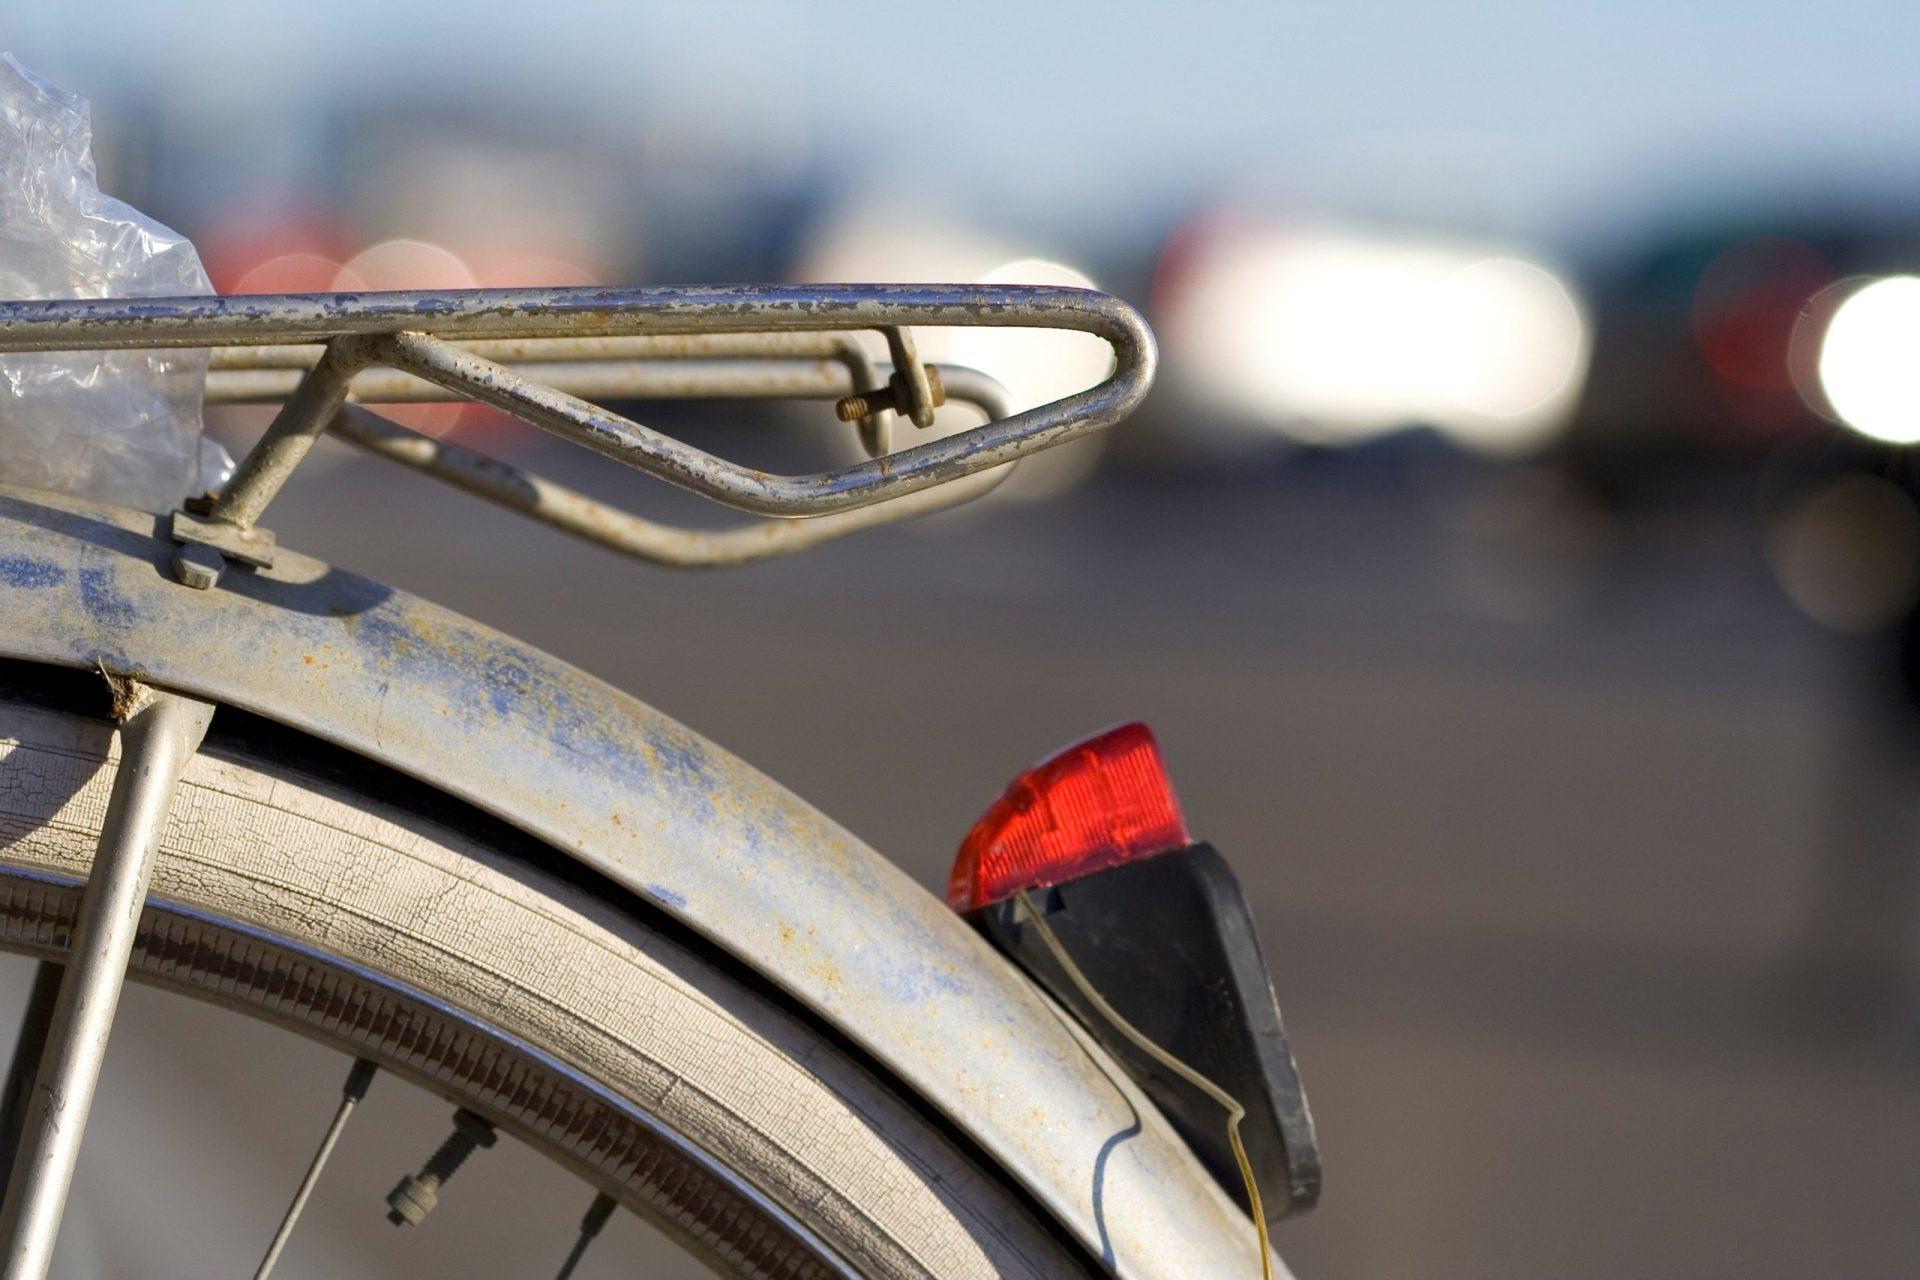 Bicicletas. Acidentes com ciclistas aumentaram mais de 20% em 2021 e mortes mais do que duplicaram